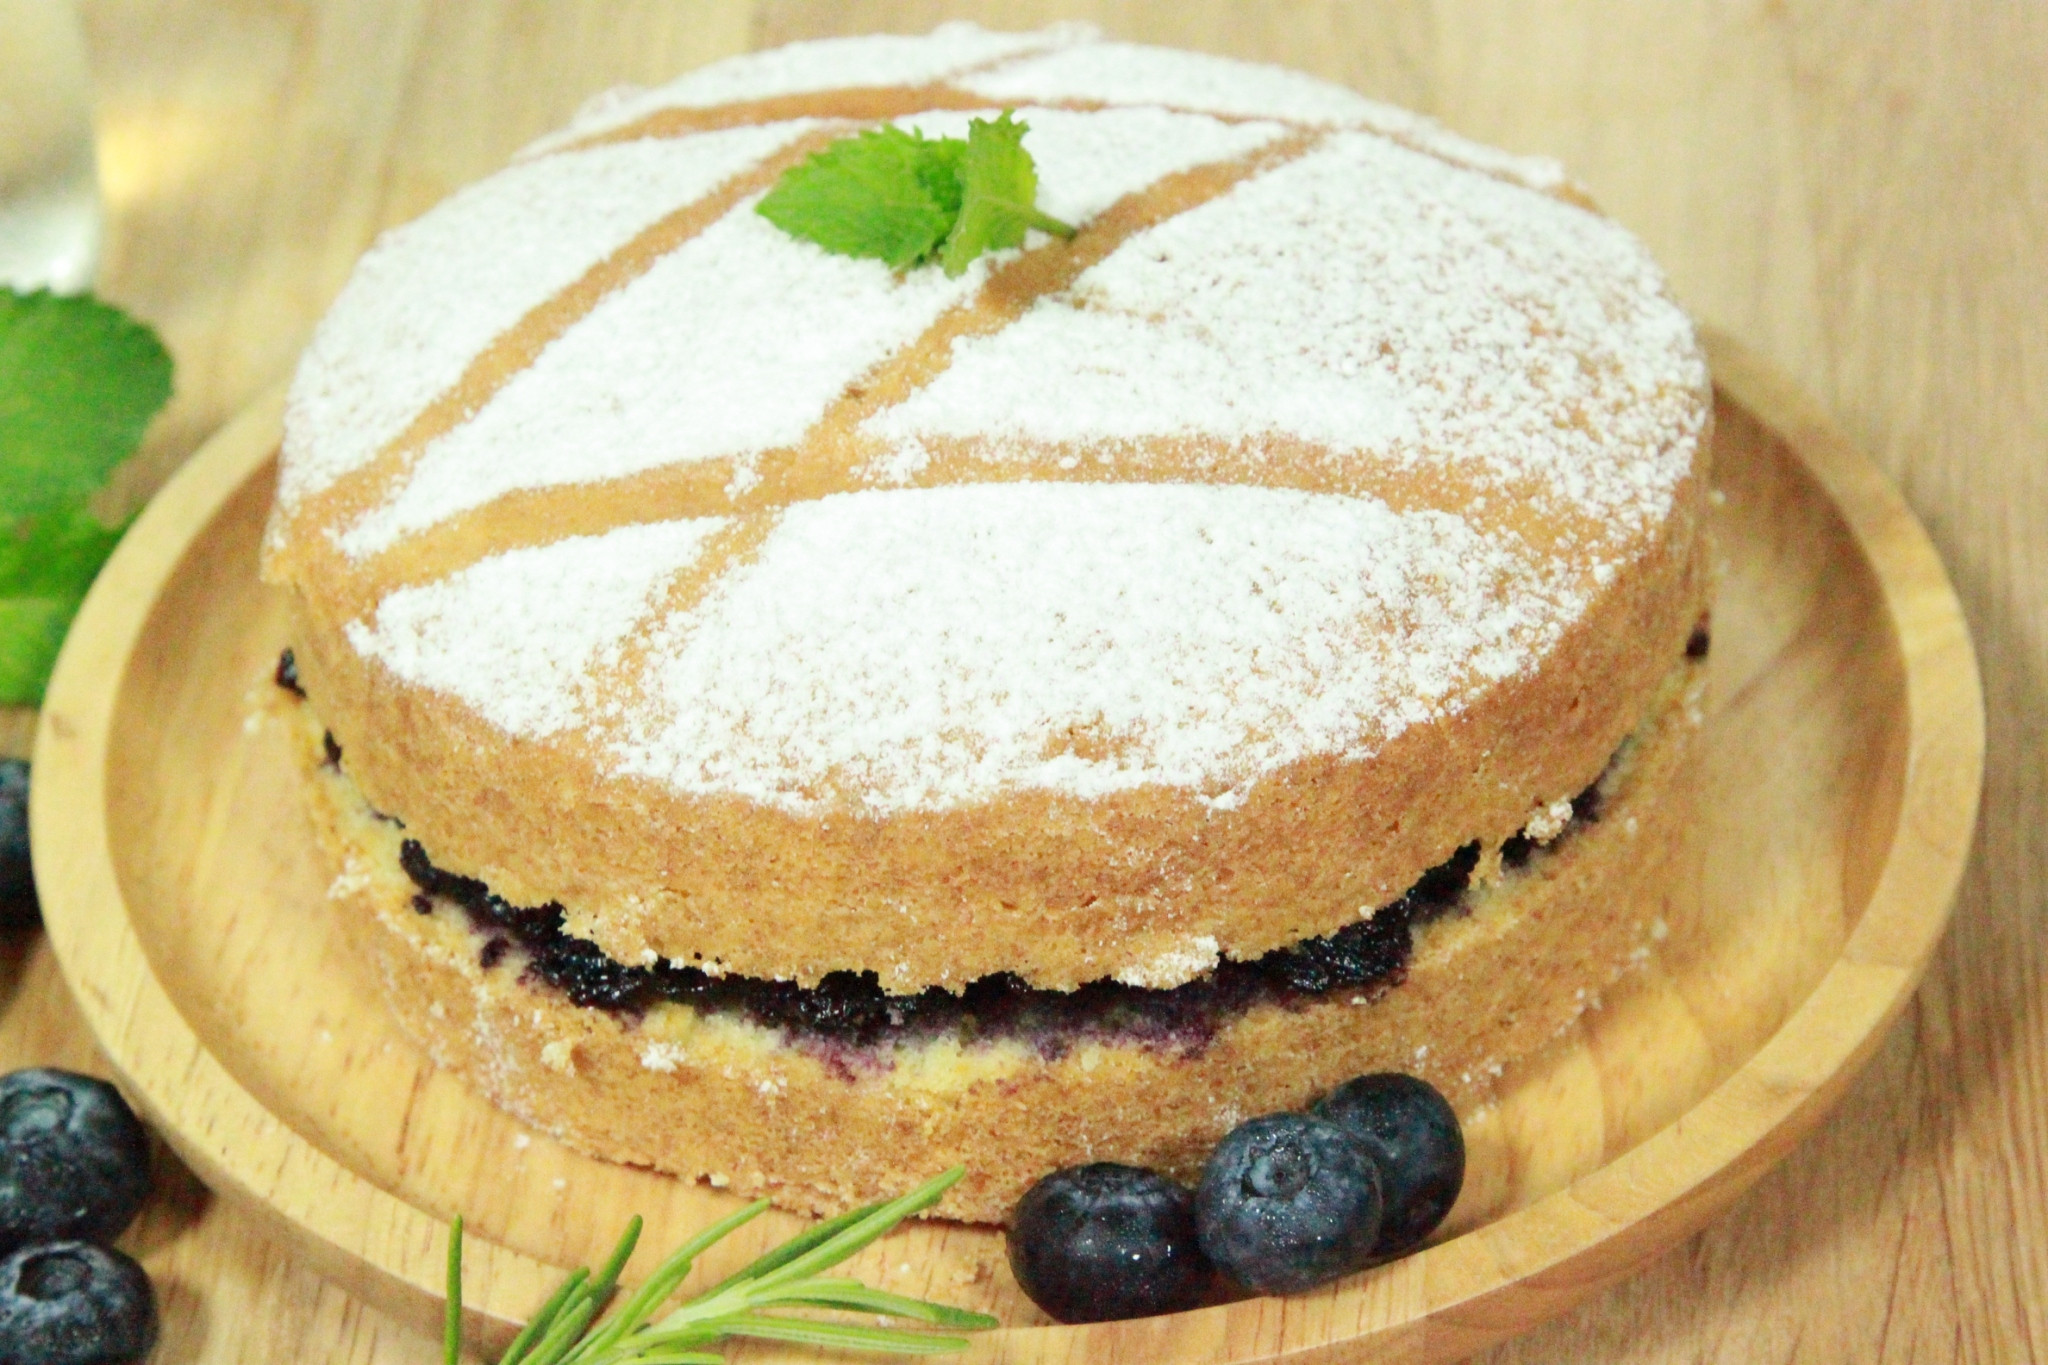 維多利亞海綿蛋糕『藍莓果醬』